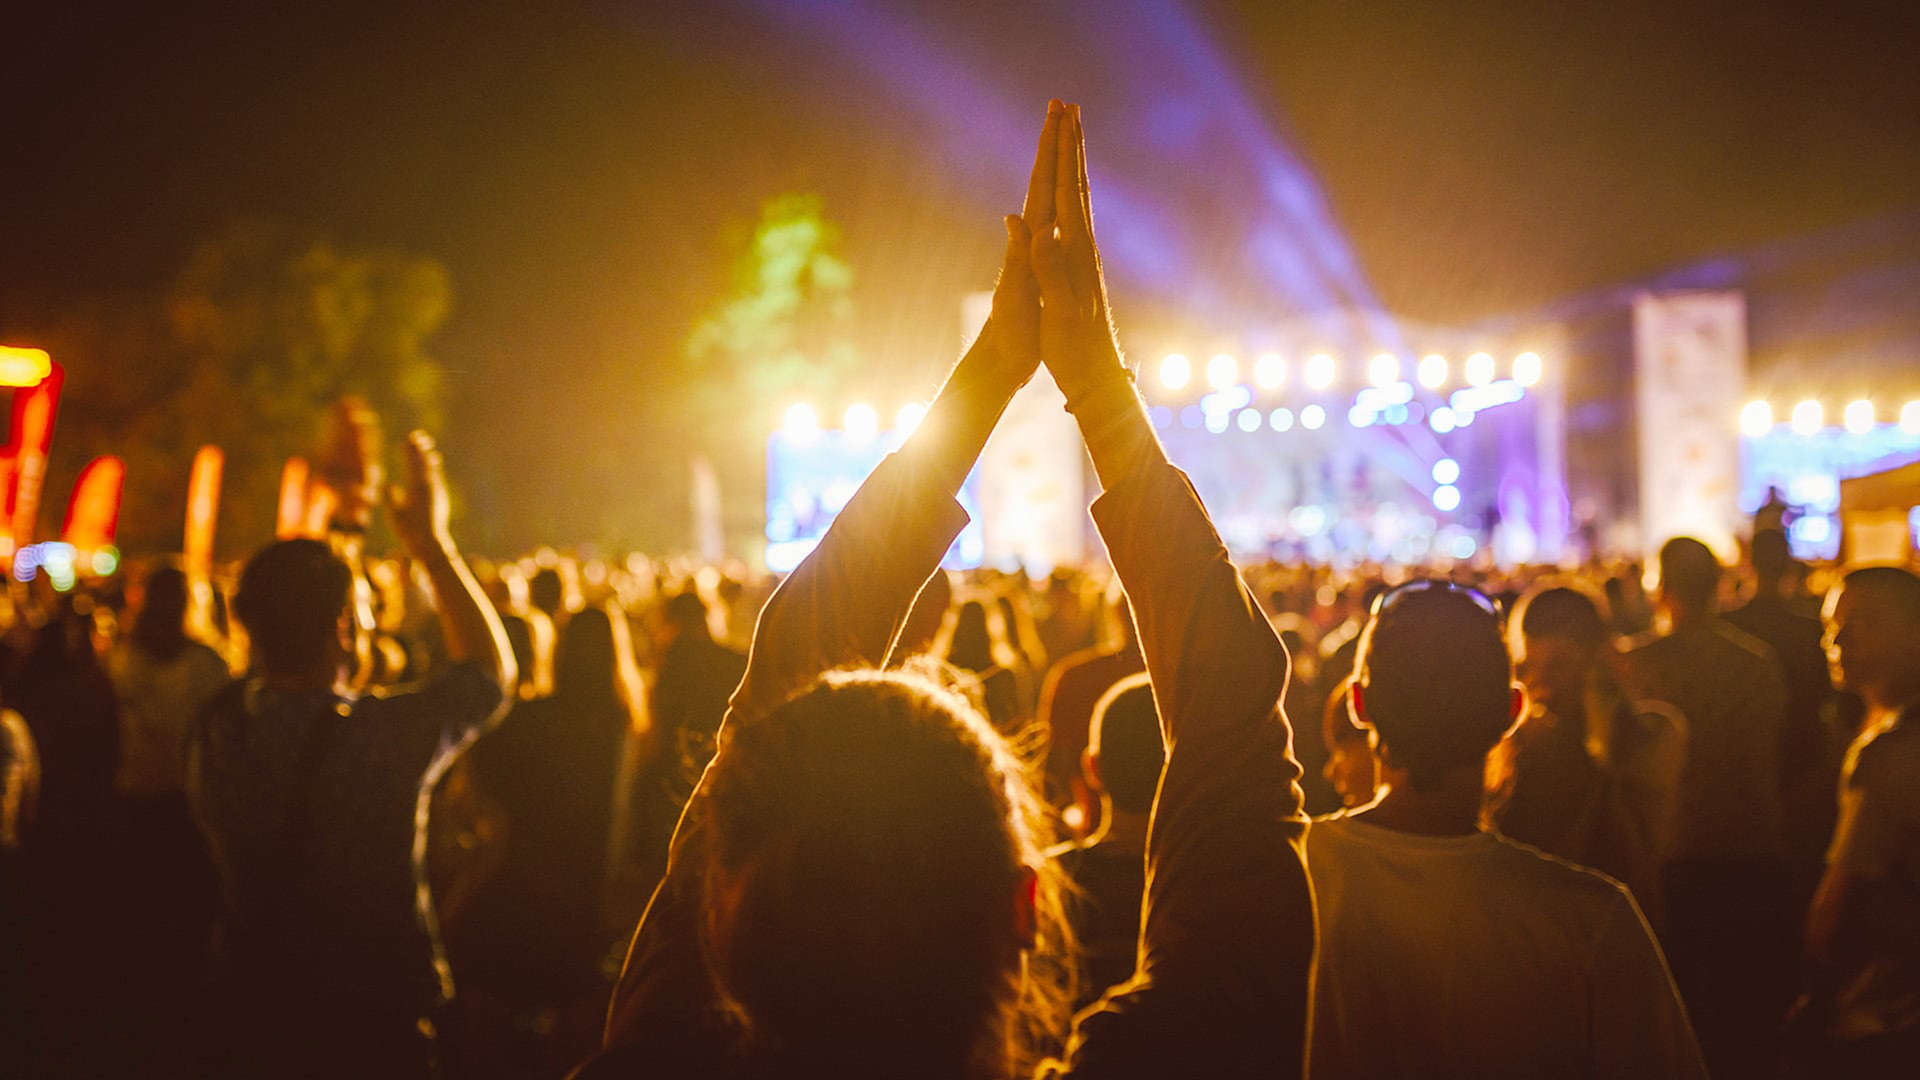 الكثير من الناس رافعين أياديهم في الهواء في مهرجان موسيقى